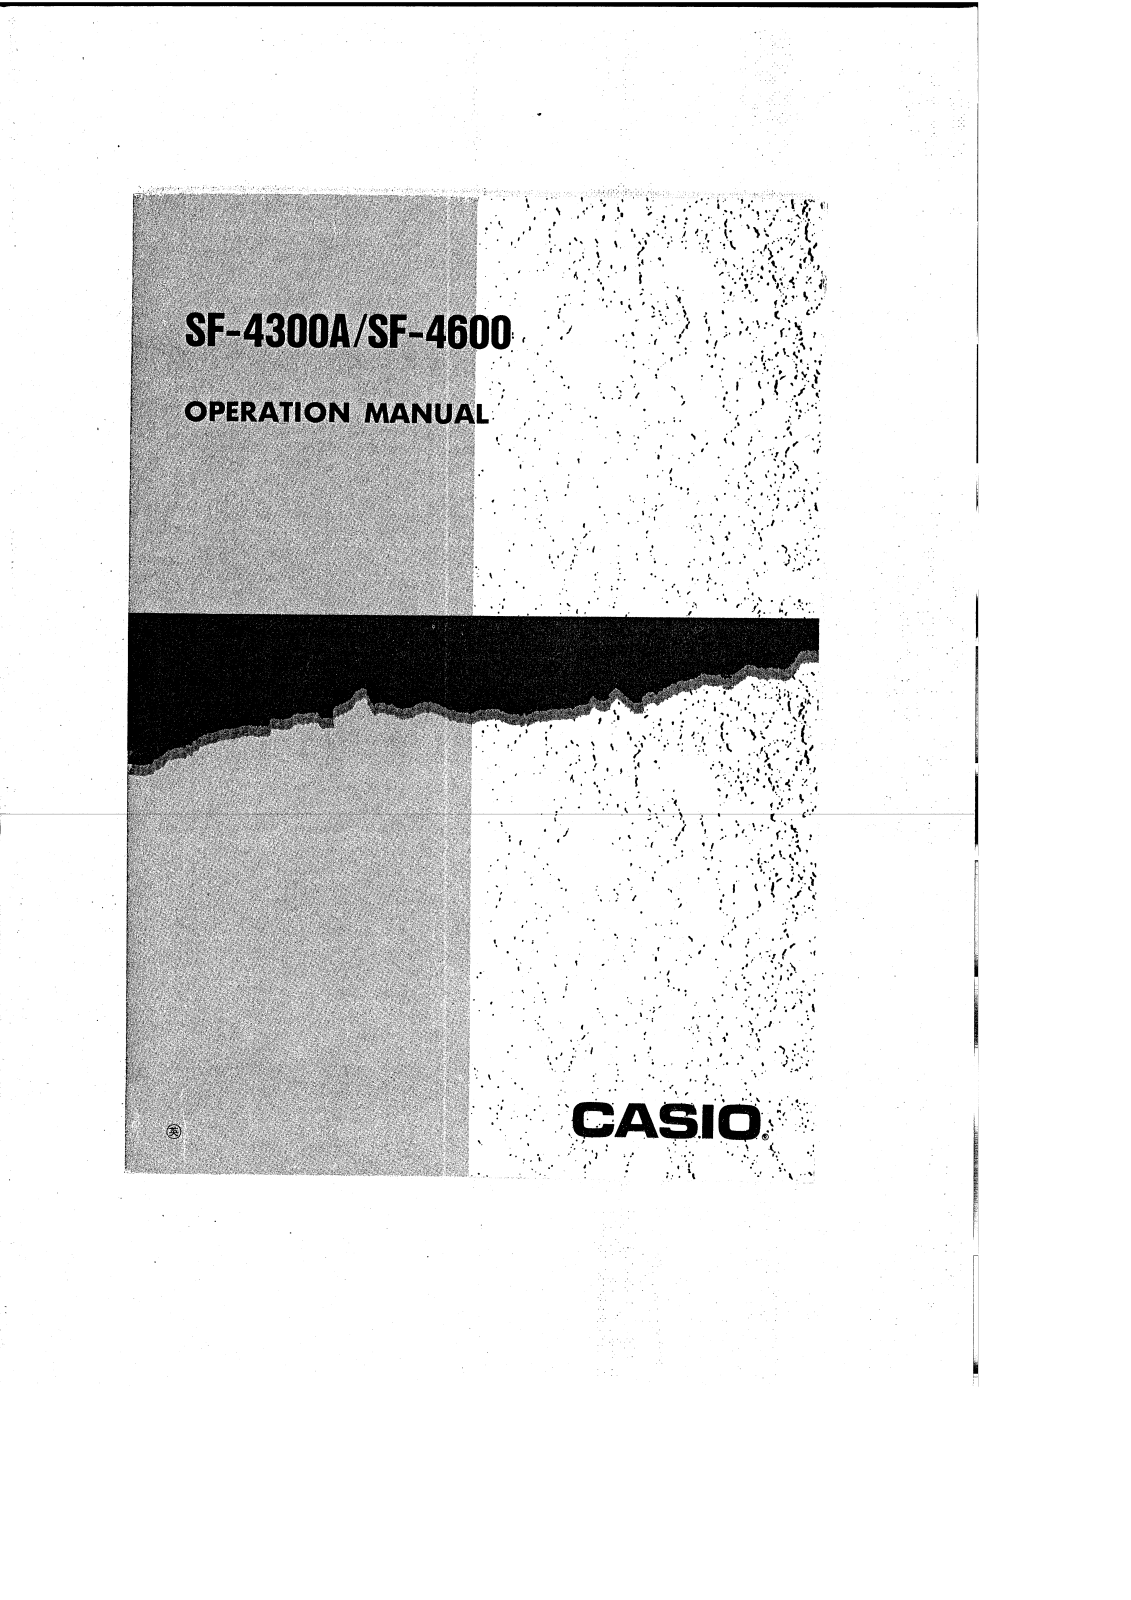 CASIO SF-4600, SF-4300A User Manual